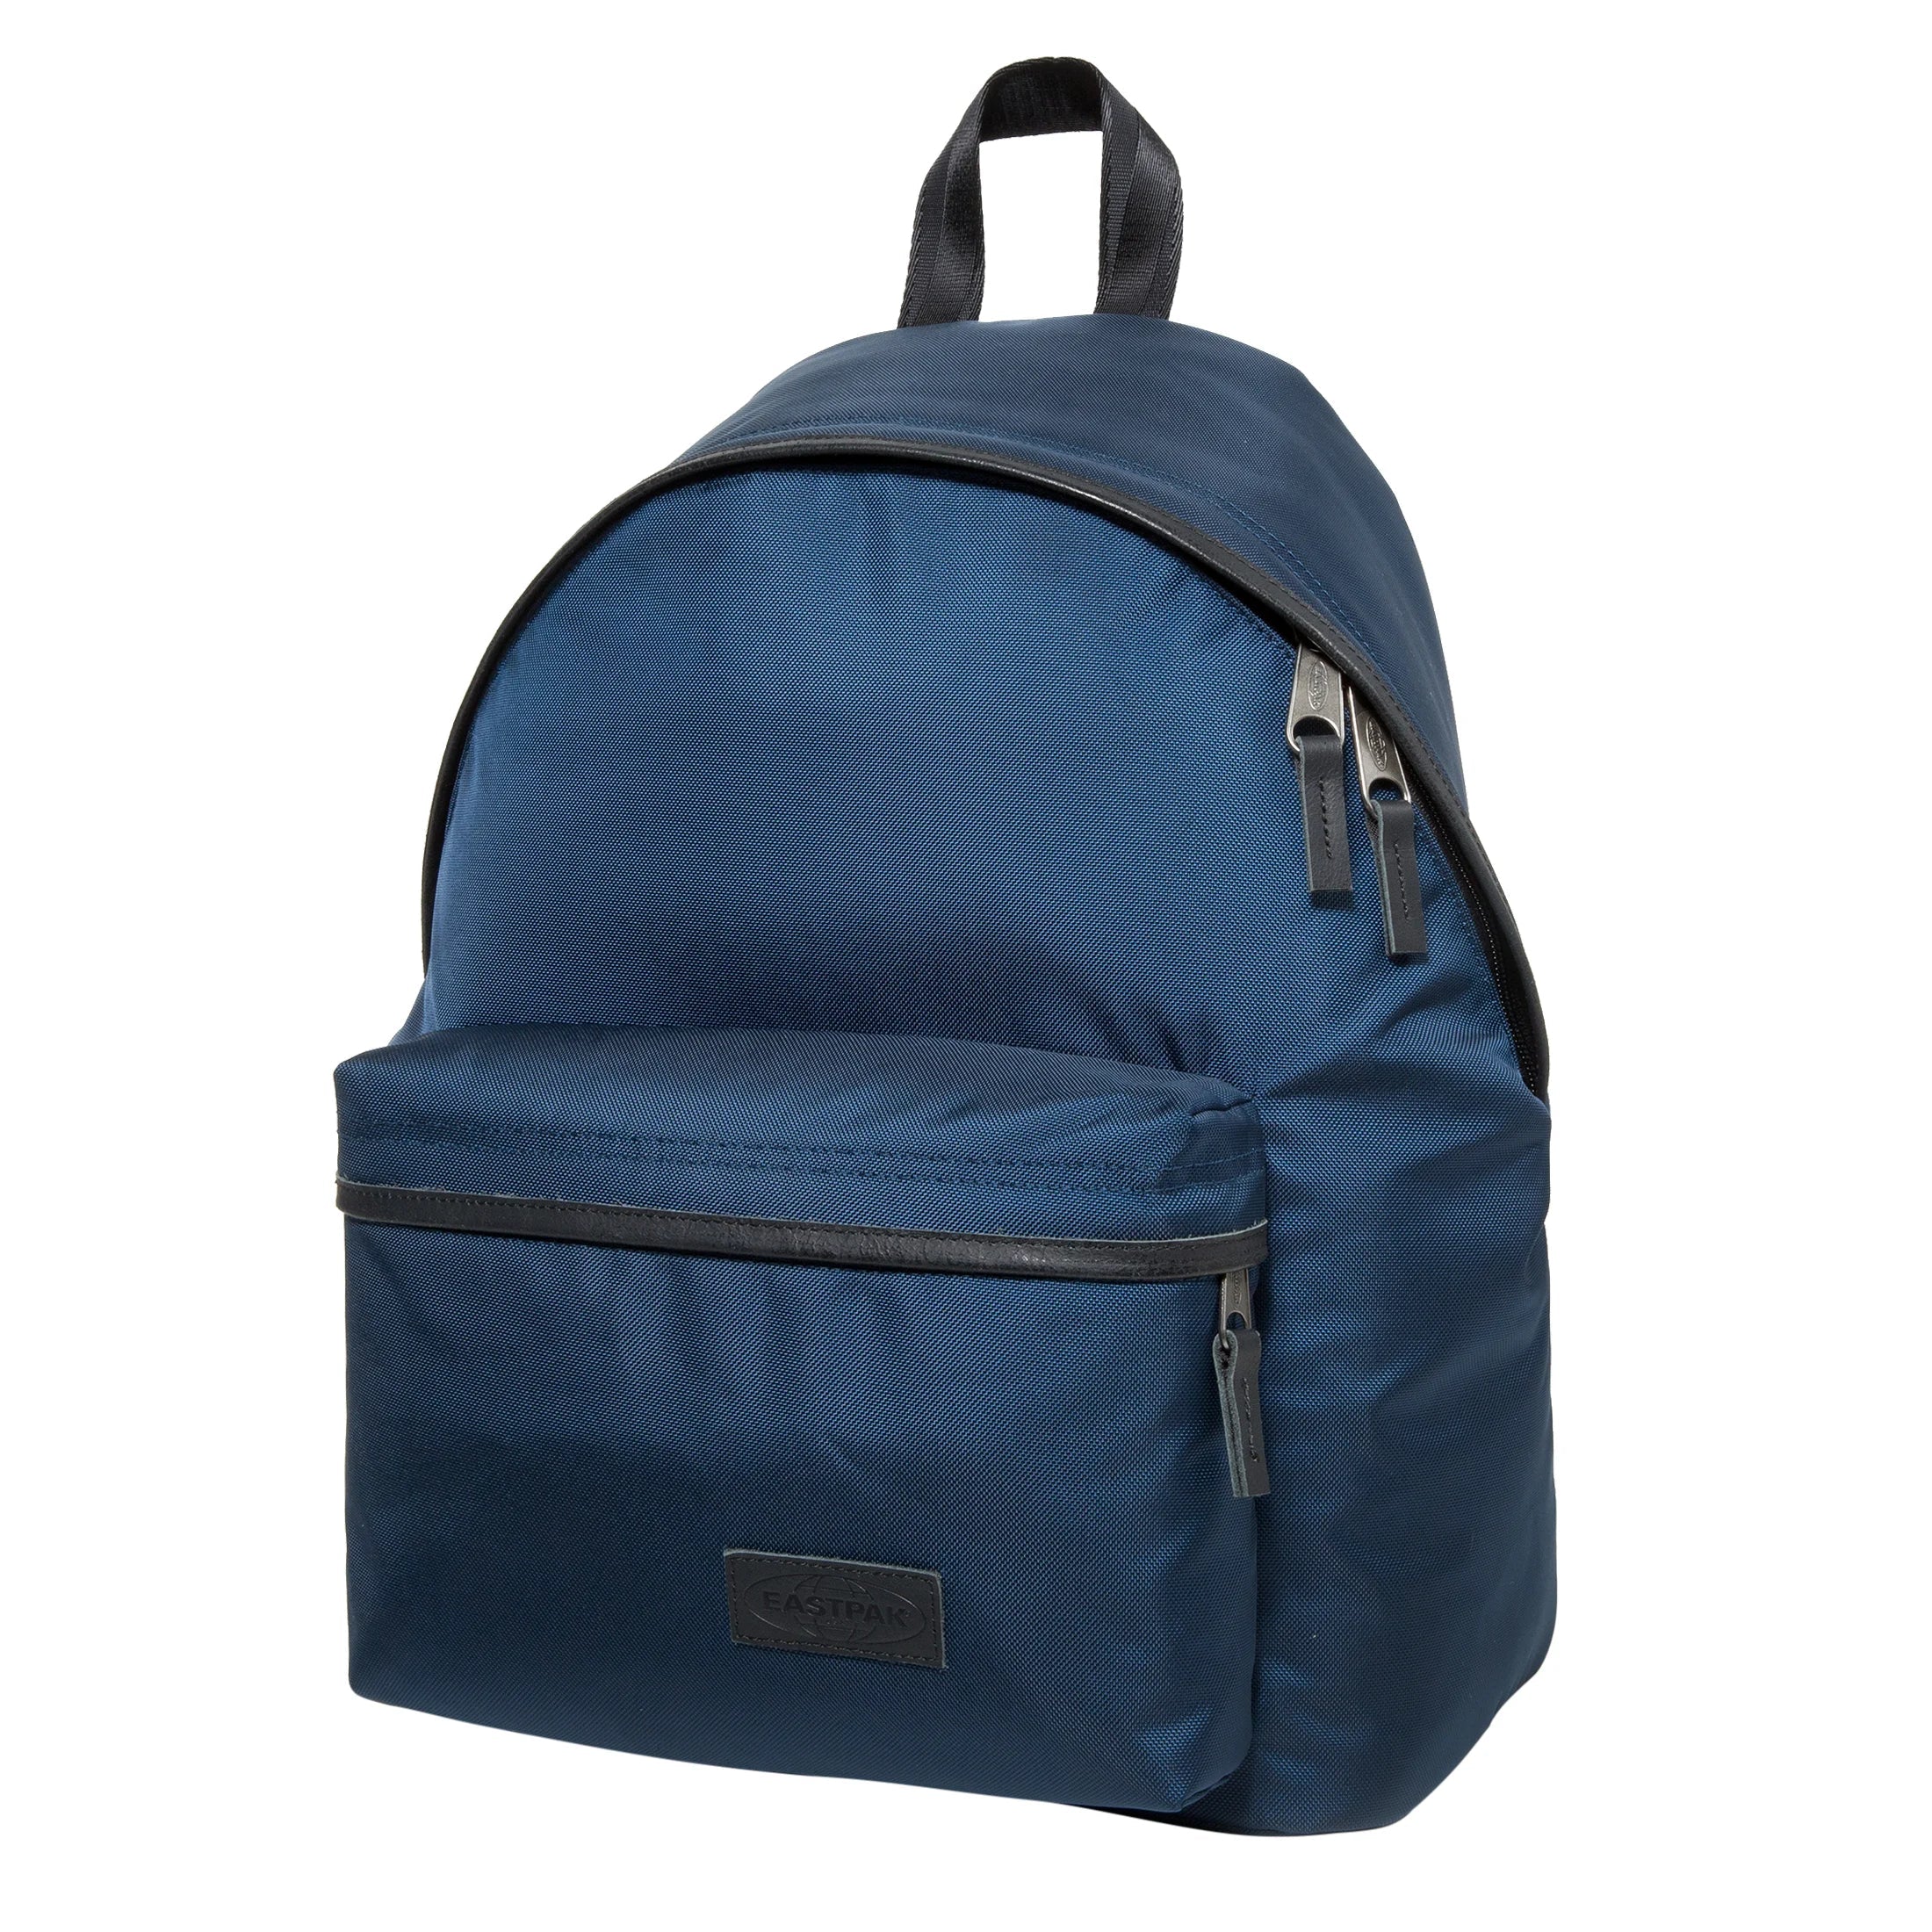 Eastpak Authentic Paded Pak'r sac à dos de loisirs 41 cm - bleu marine